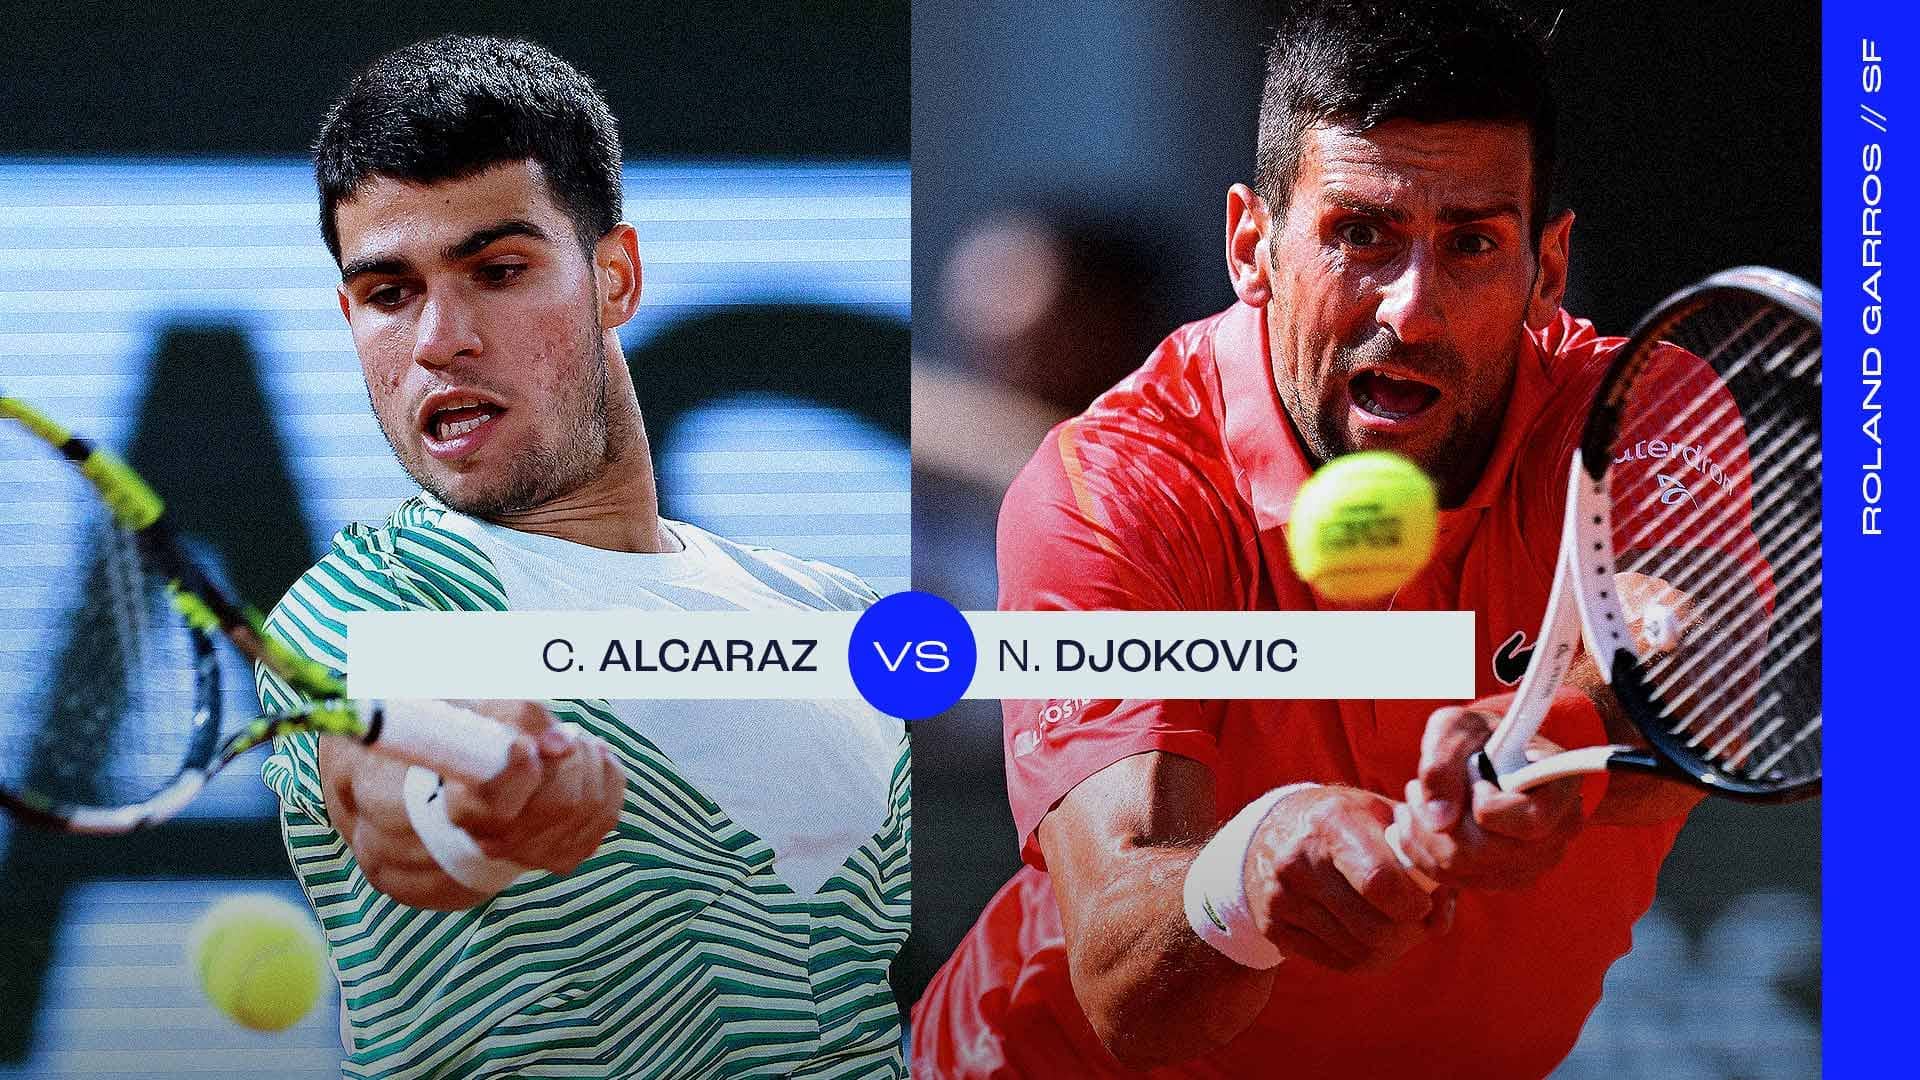 Carlos Alcaraz vs. Novak Djokovic